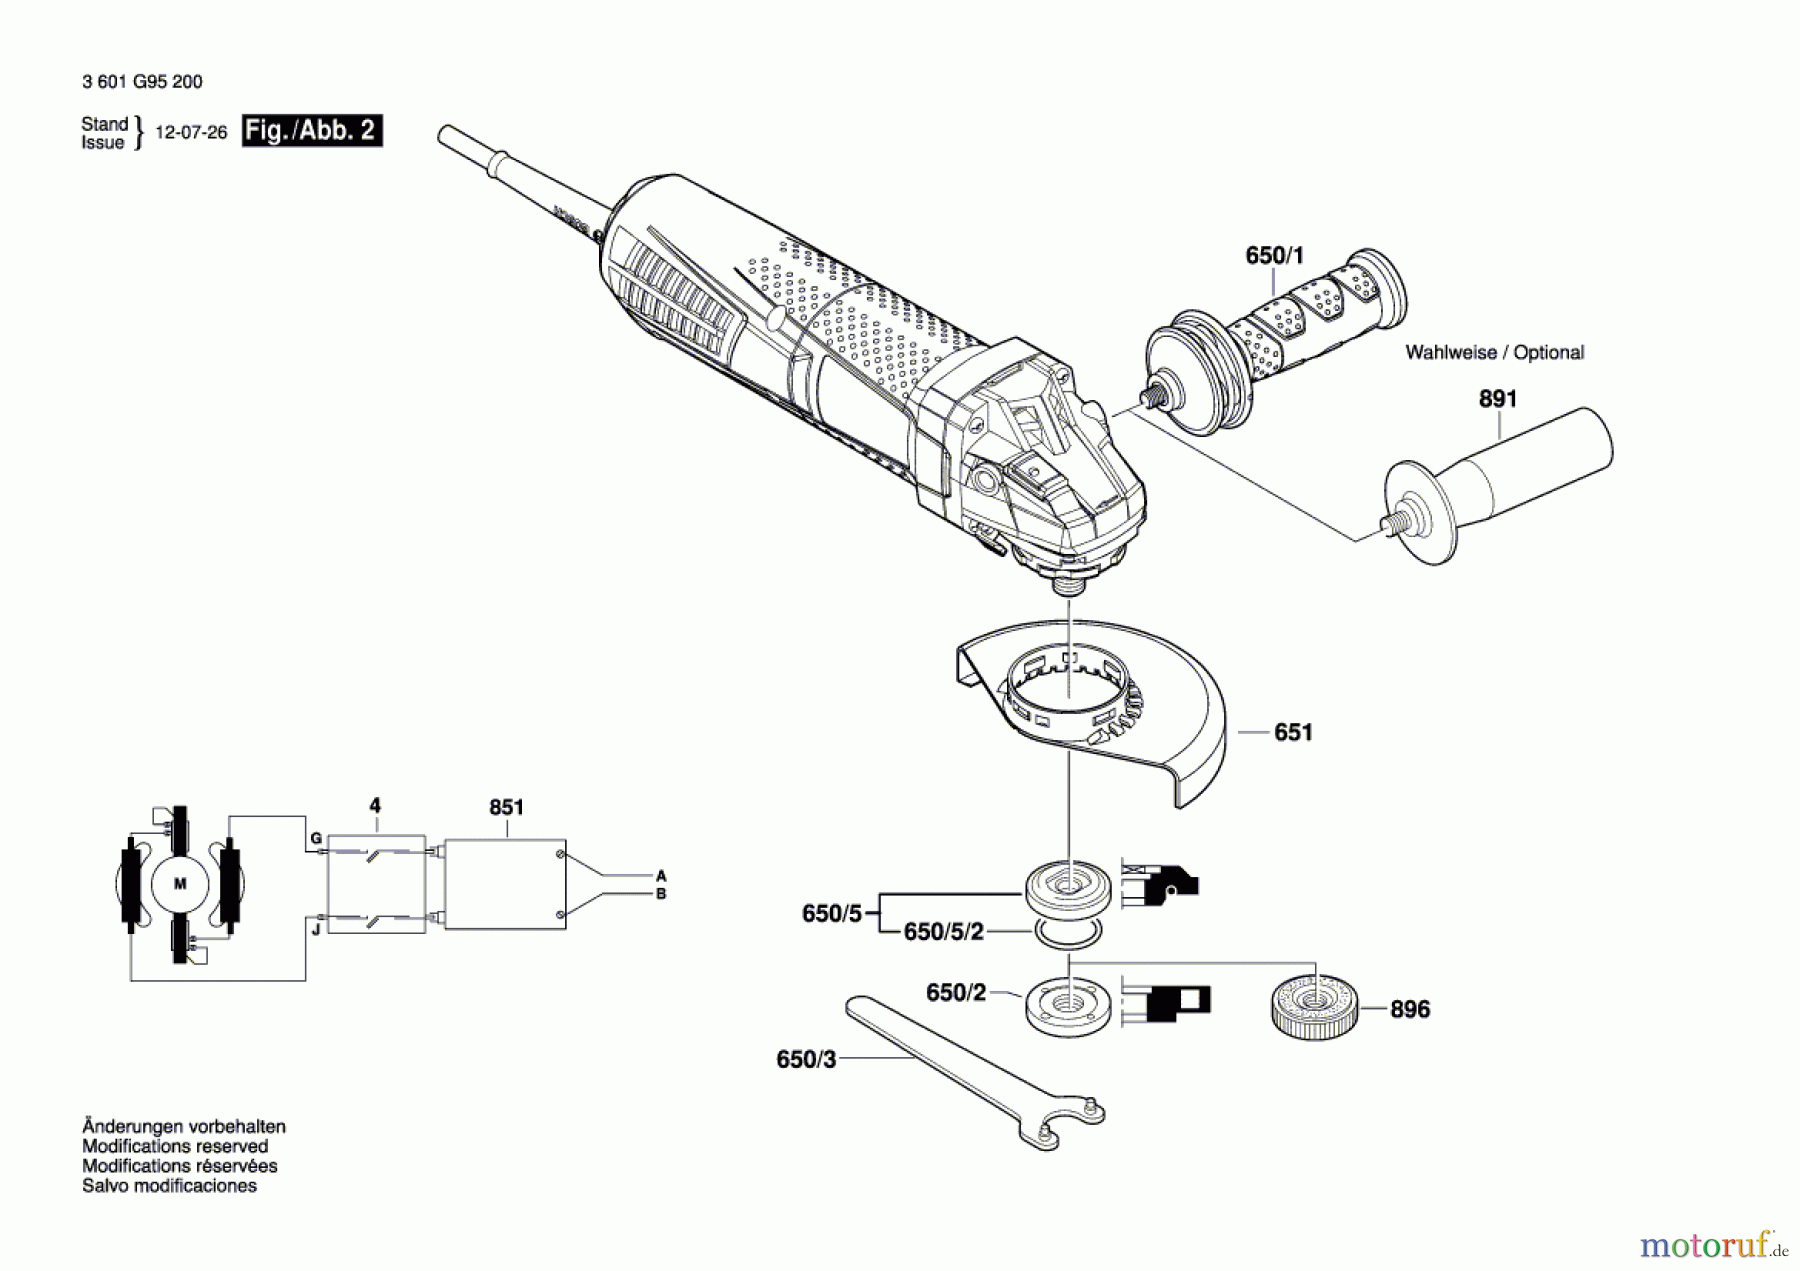  Bosch Werkzeug Winkelschleifer GWS 15-150 CIP Seite 2